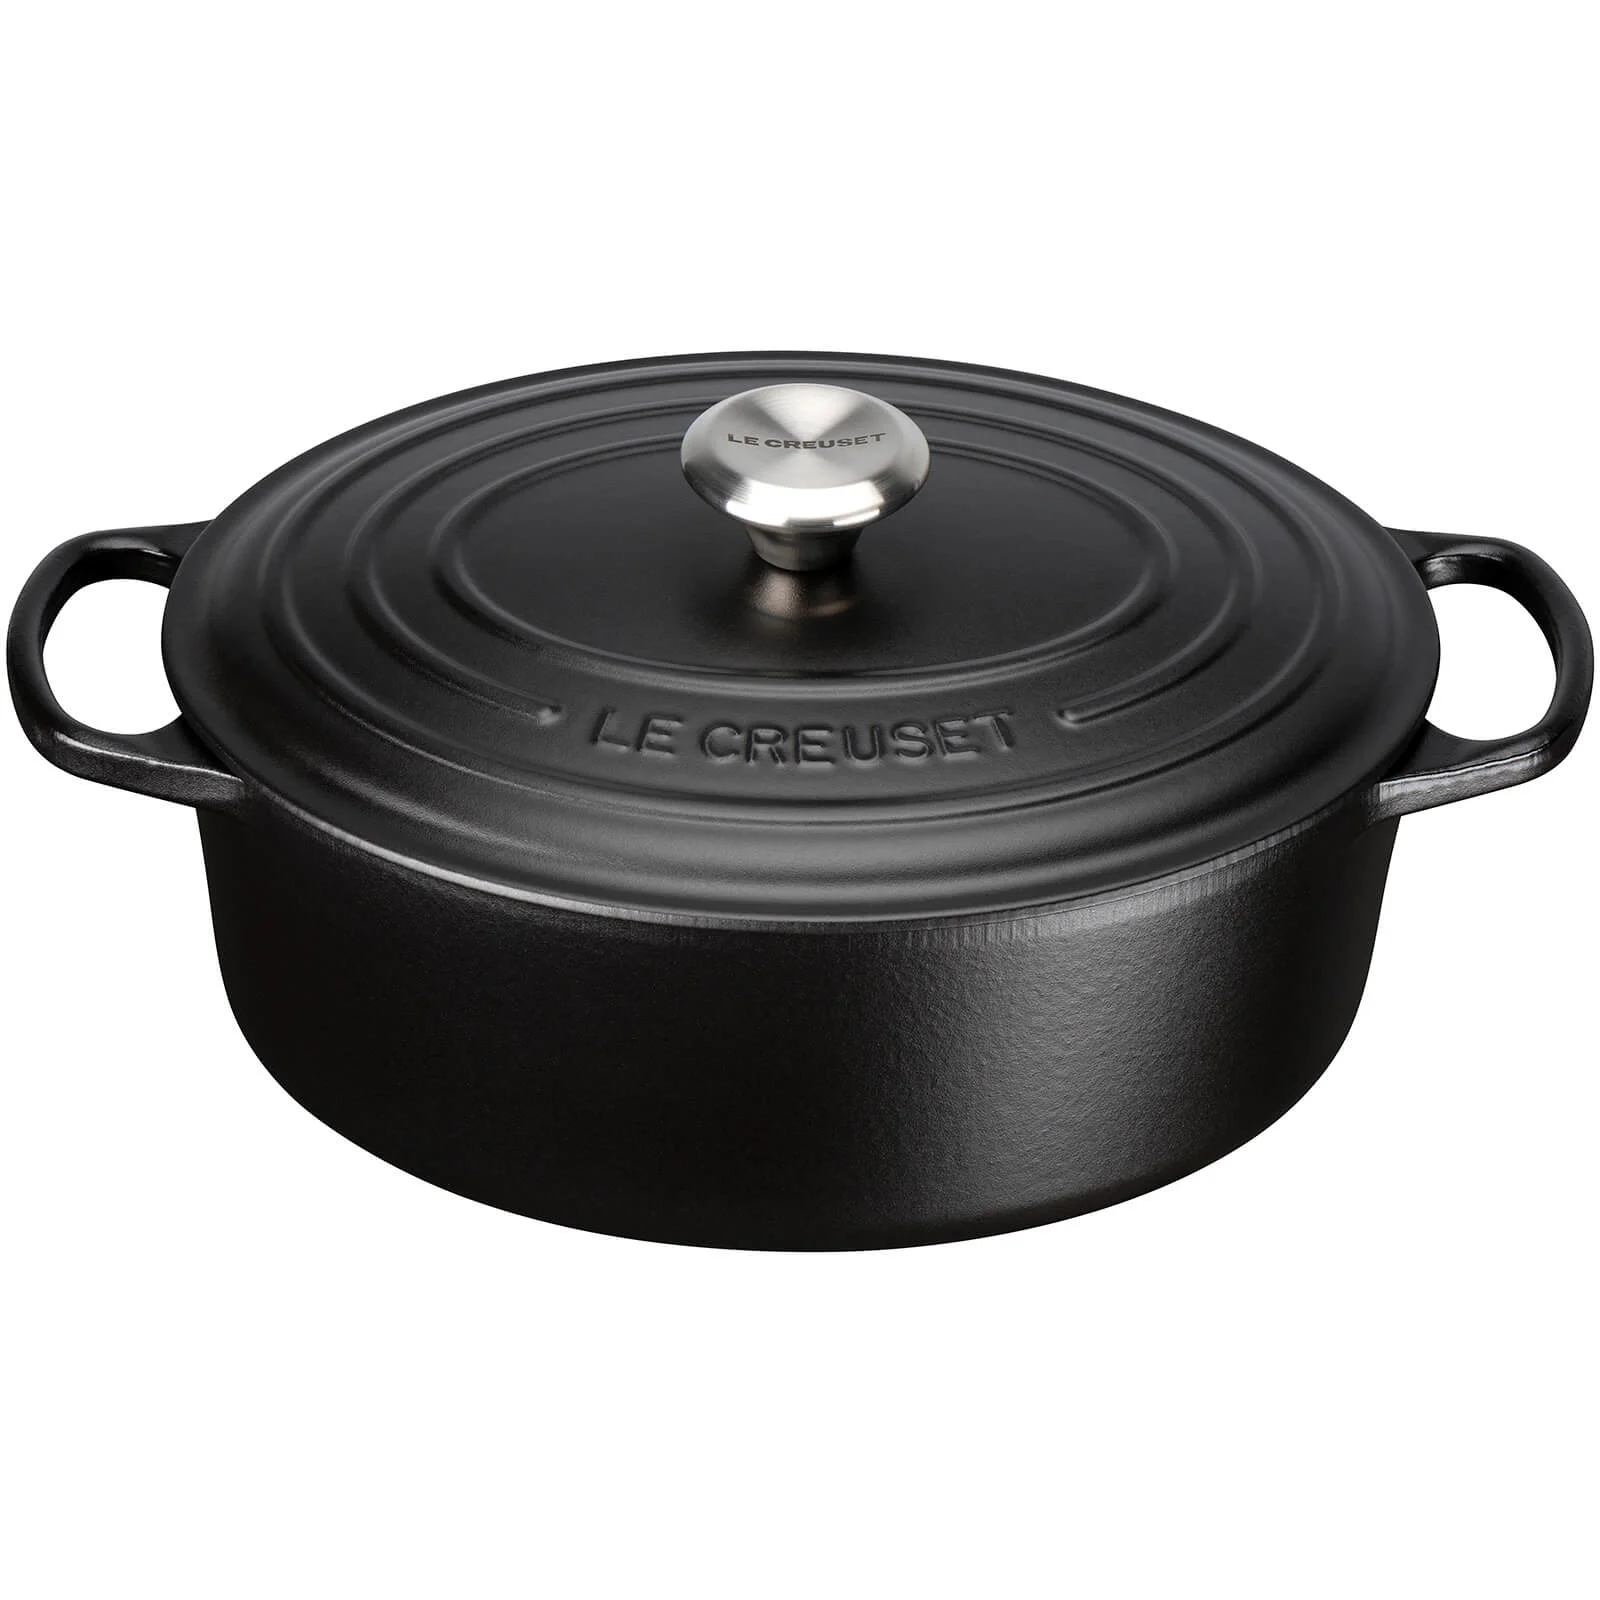 Le Creuset Signature Cast Iron Oval Casserole Dish - 23cm - Satin Black Image 1